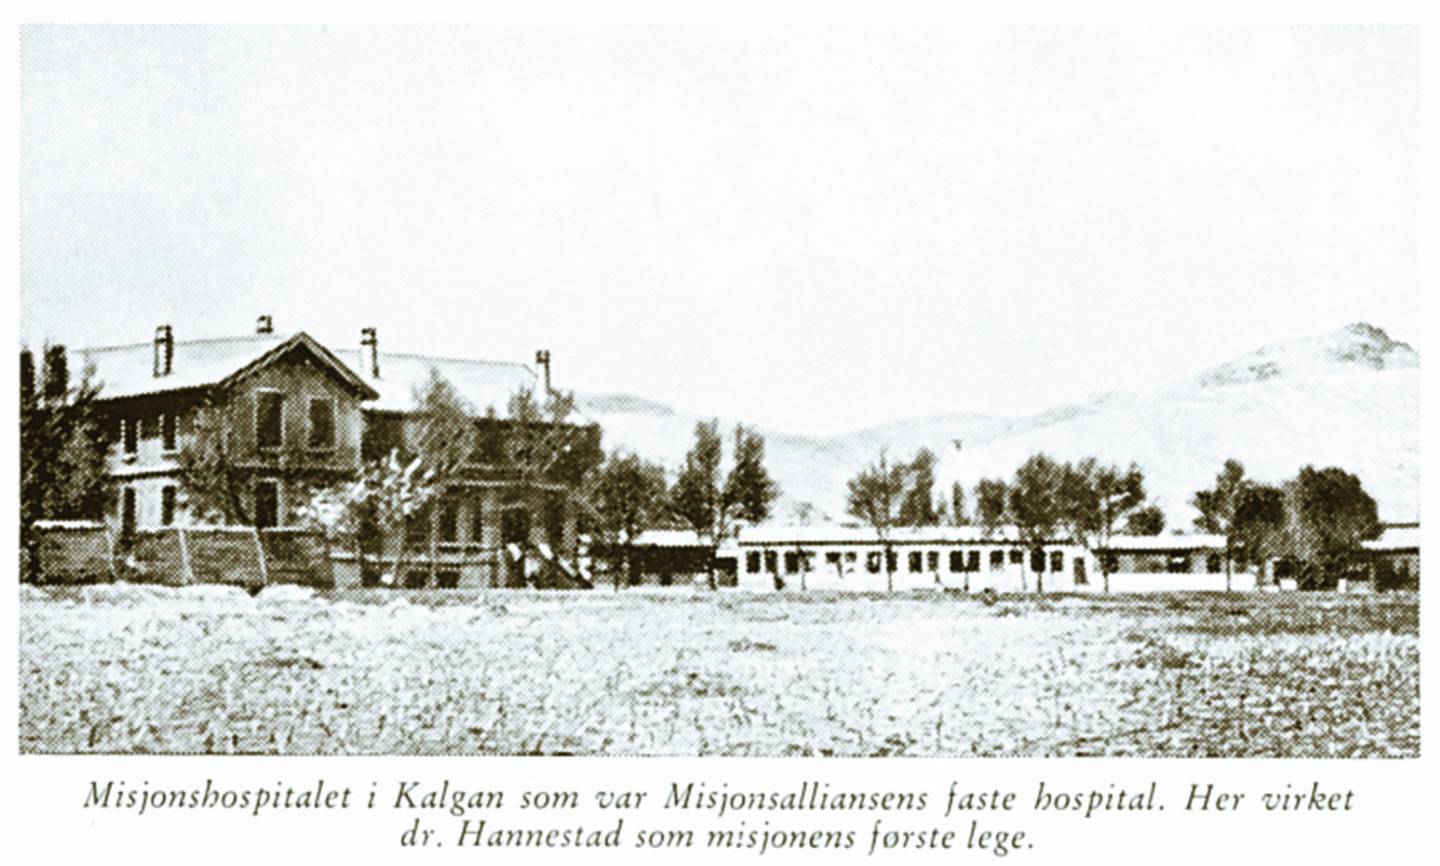 Hospitalet i Kalgan var det eneste i området. Det het Edvard Gerrards minne, og var oppkalt opp etter en av pionérmisjonærene som omkom etter bare ett år i felt.